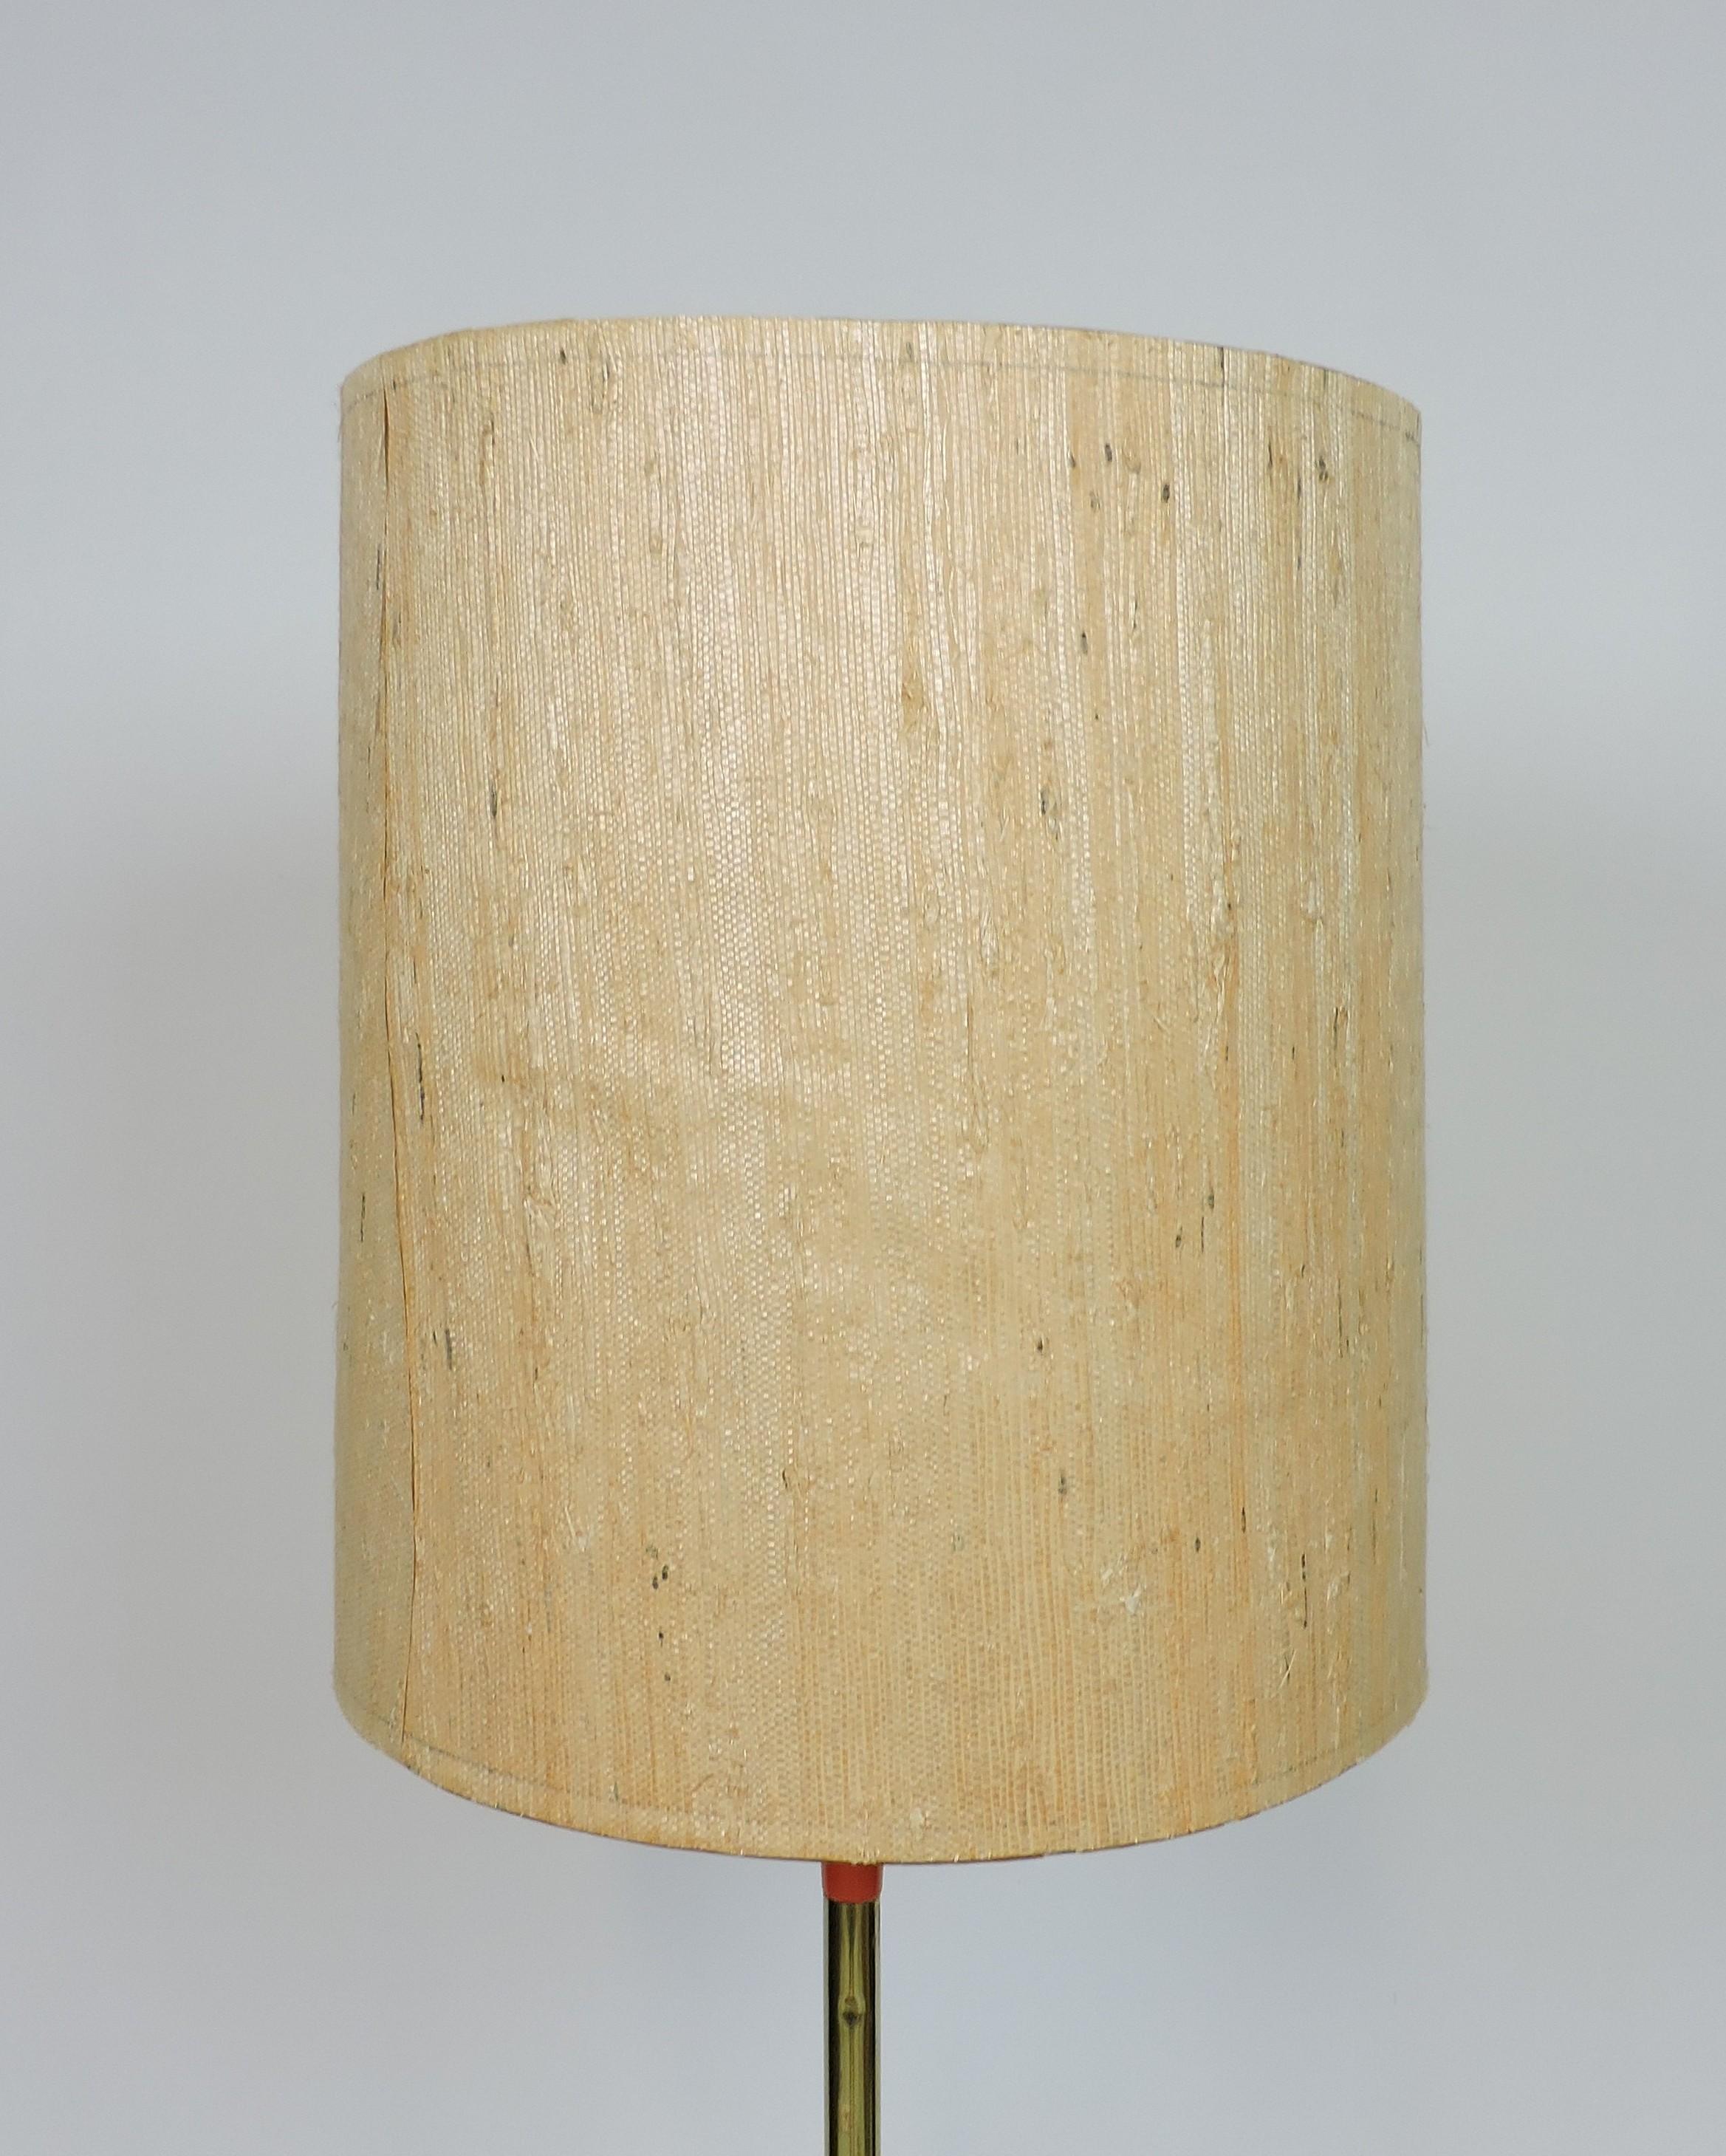 Sehr coole und ungewöhnliche Stehlampe, hergestellt von dem hochwertigen Beleuchtungshersteller Laurel Lamp Company aus Newark, NJ. Diese gut gemachte Lampe hat einen dreibeinigen orangefarbenen Metallsockel, einen messingfarbenen Stiel und den